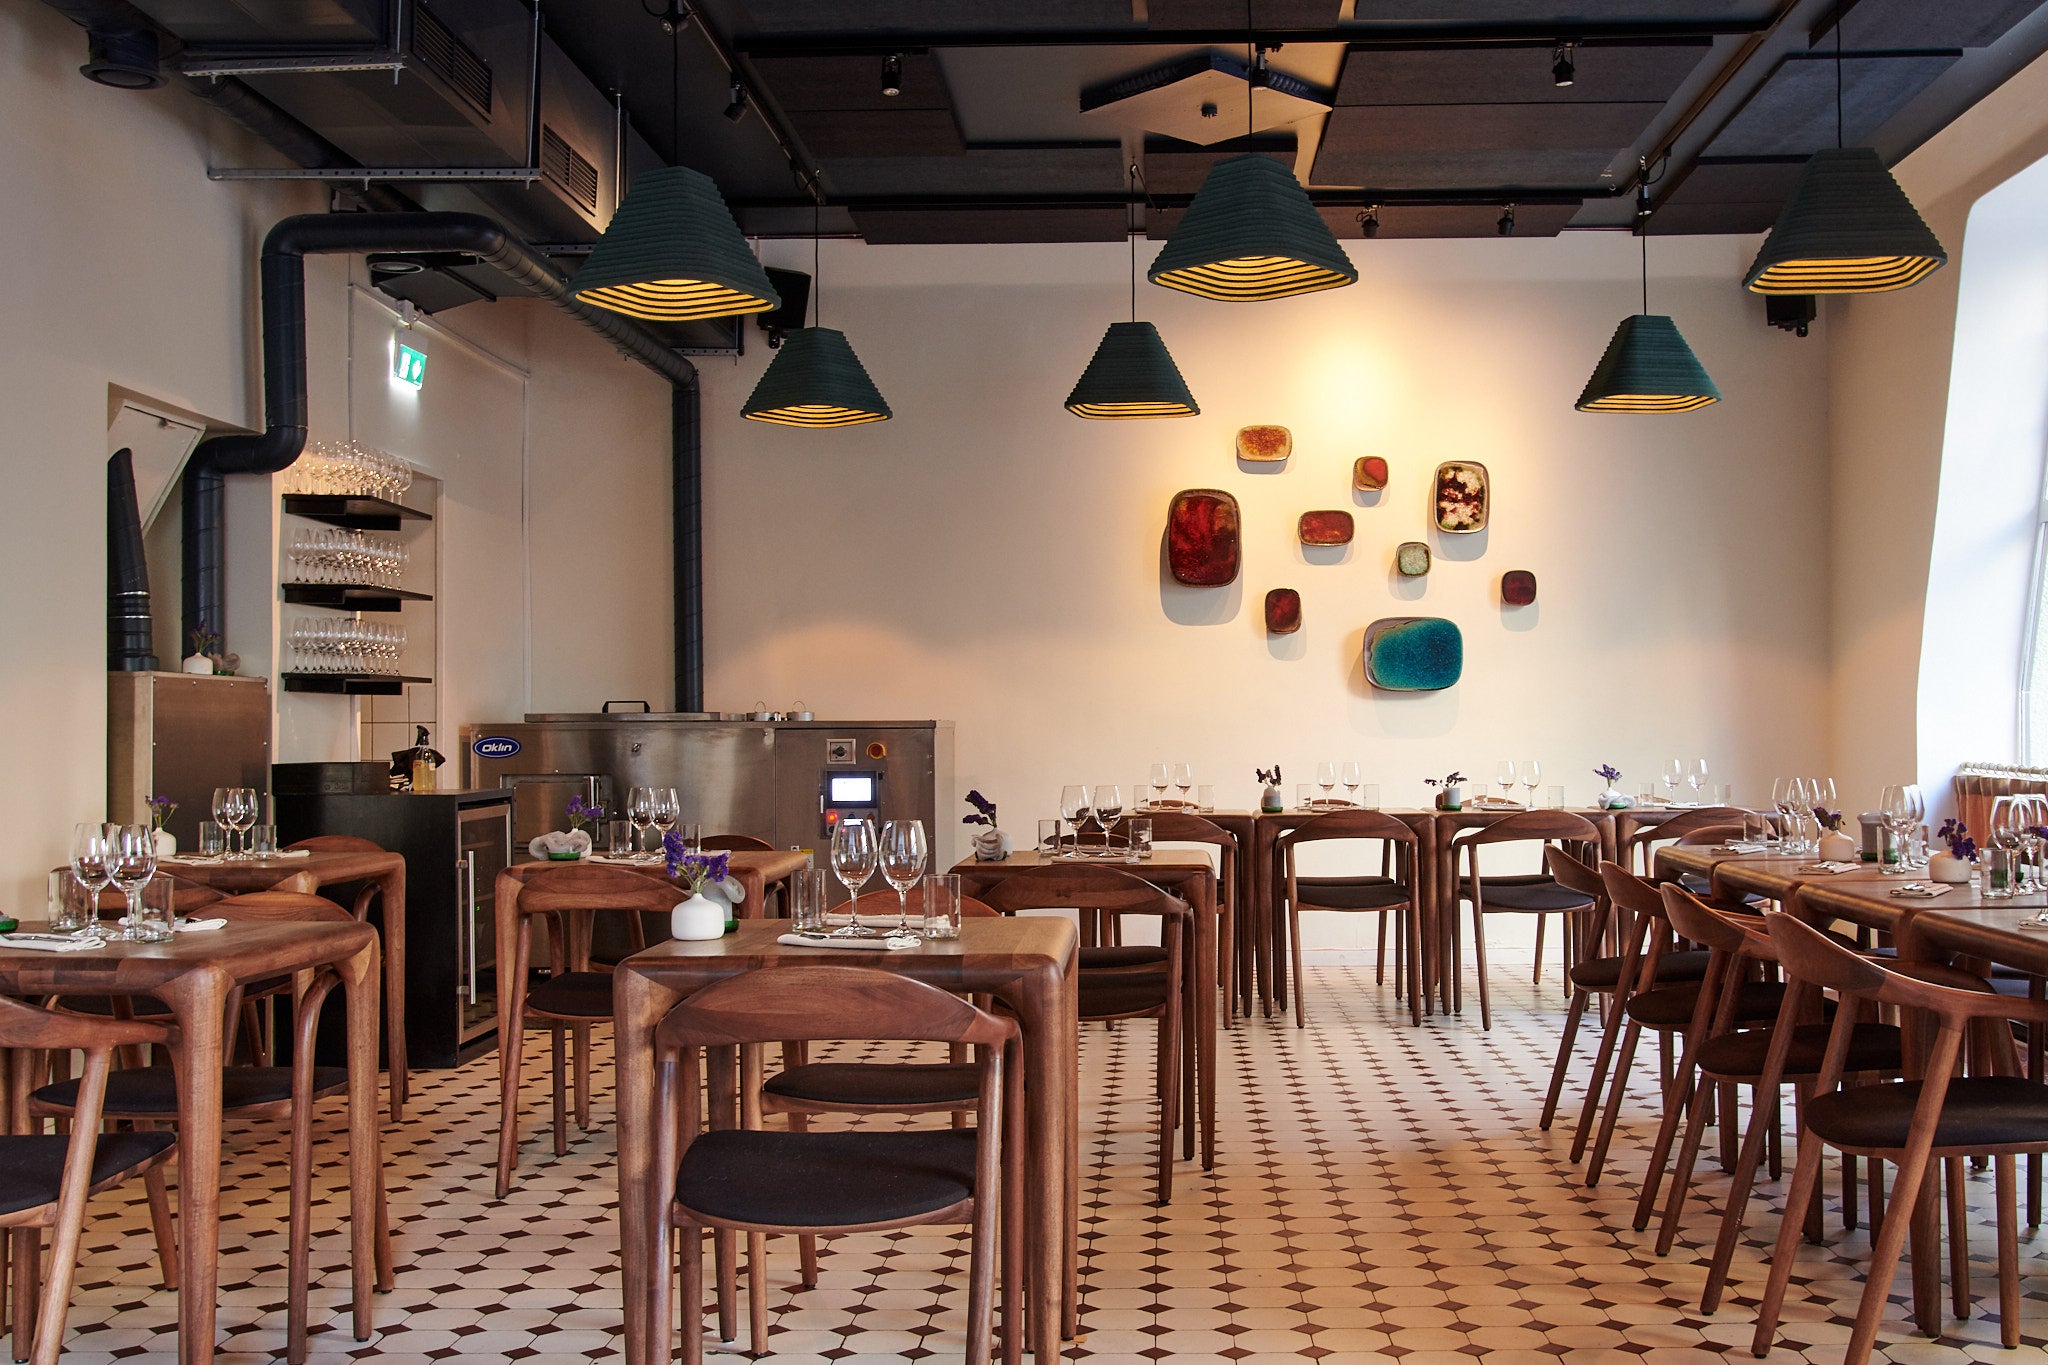 Nolla is Helsinki’s first zero-waste restaurant